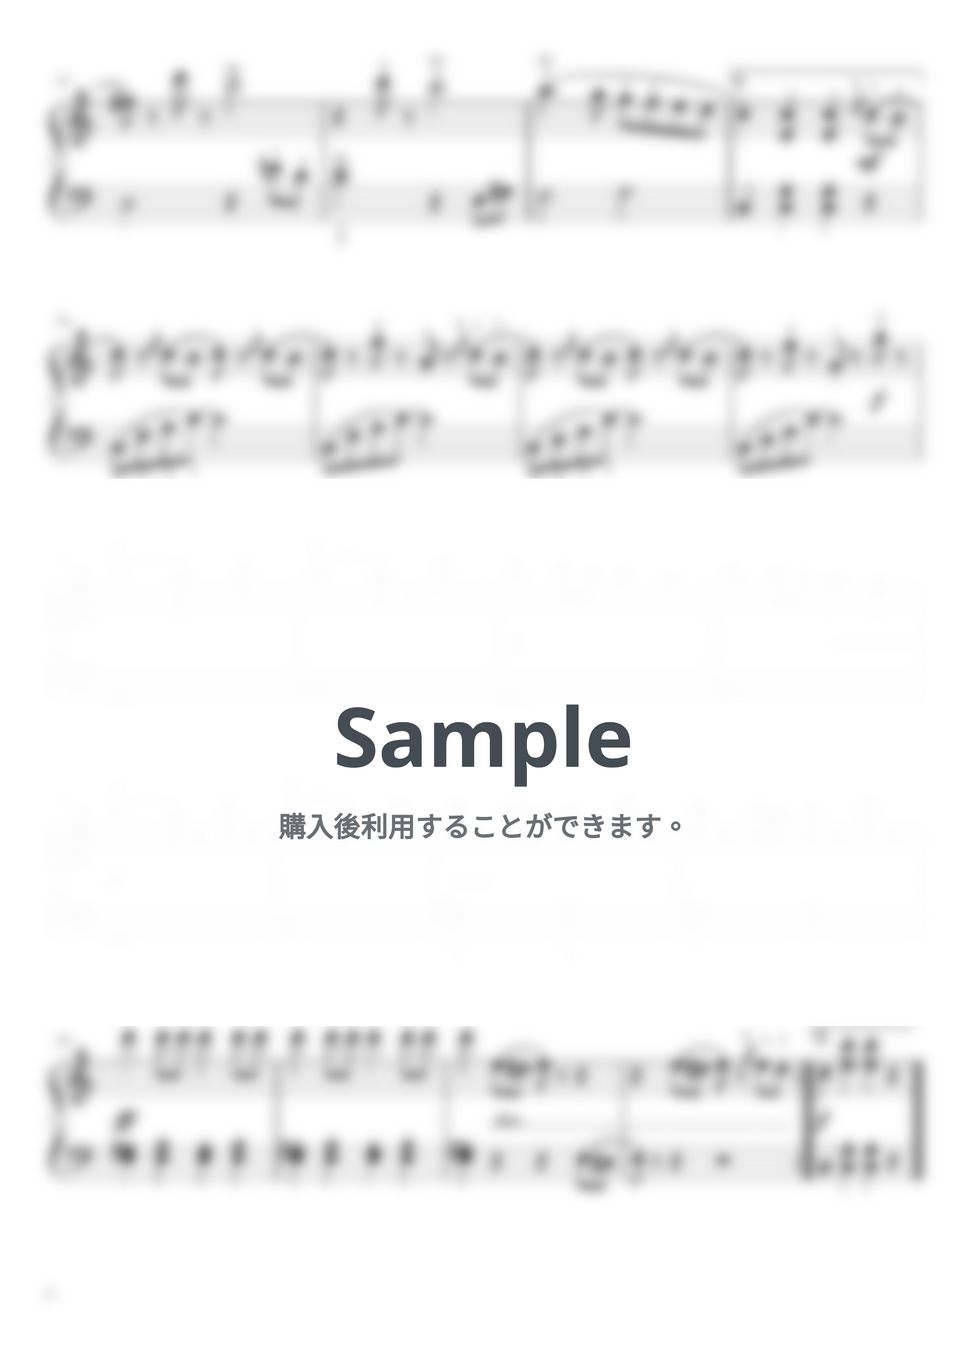 ヨハンシュトラウス1世 - ラデツキー行進曲 (ピアノ) by SachiyoU